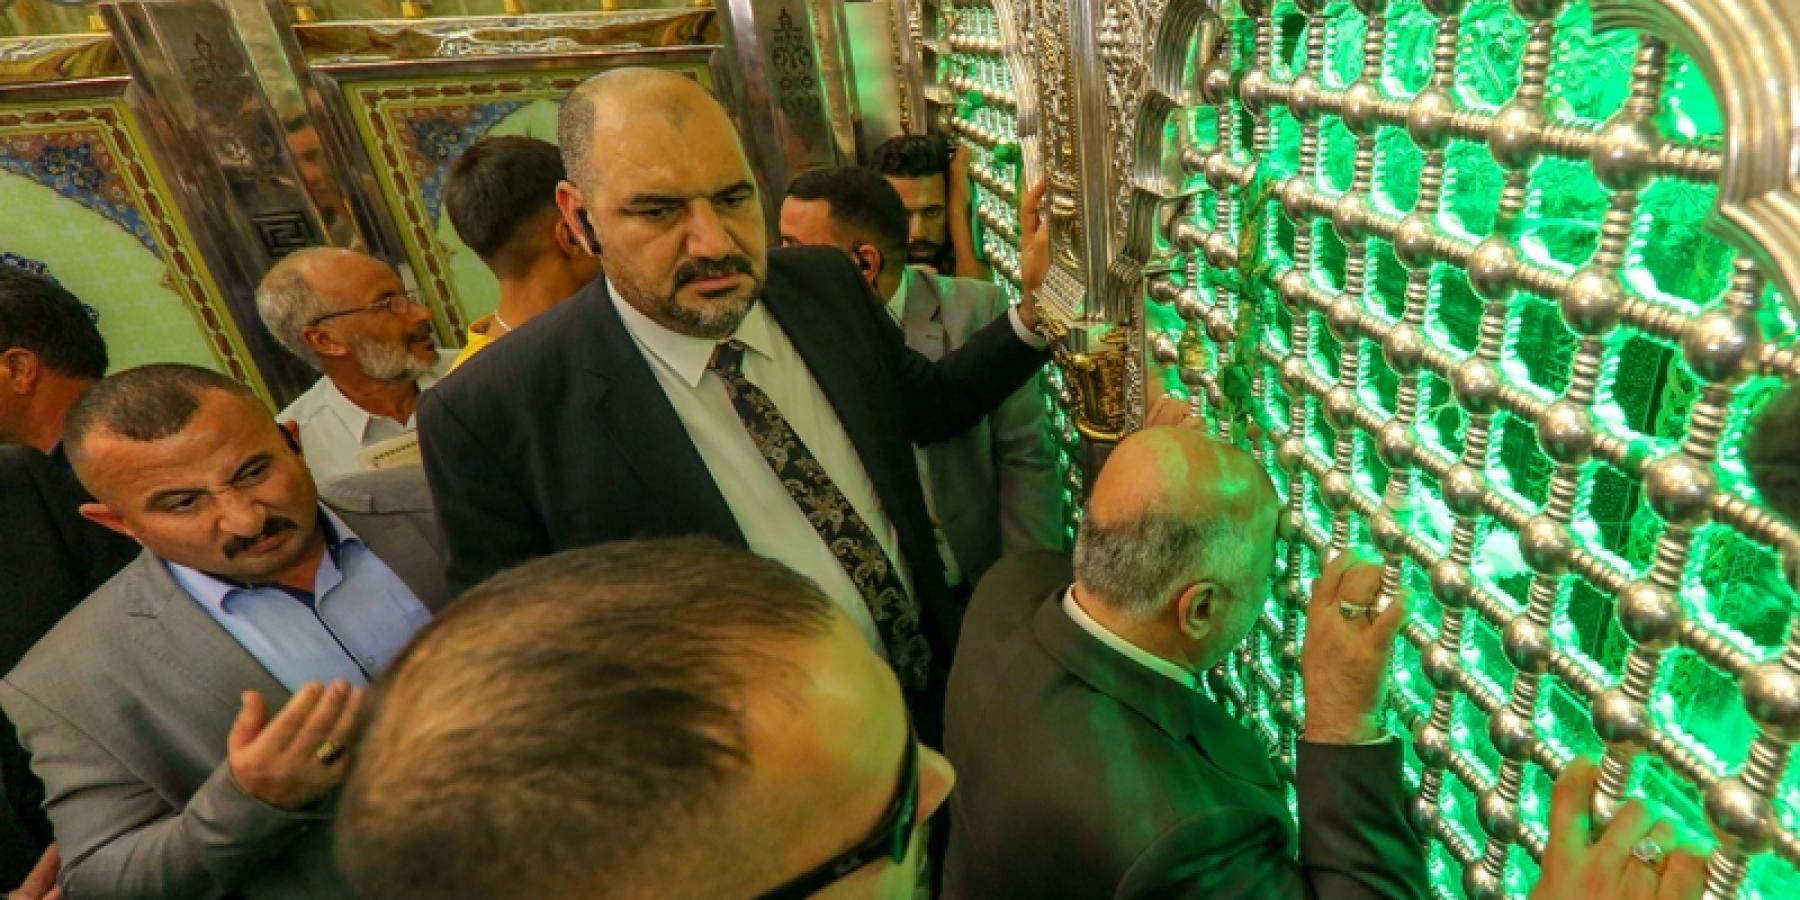 رئيس الوزراء الدكتور حيدر العبادي يتشرف بزيارة مرقد أمير المؤمنين (عليه السلام)